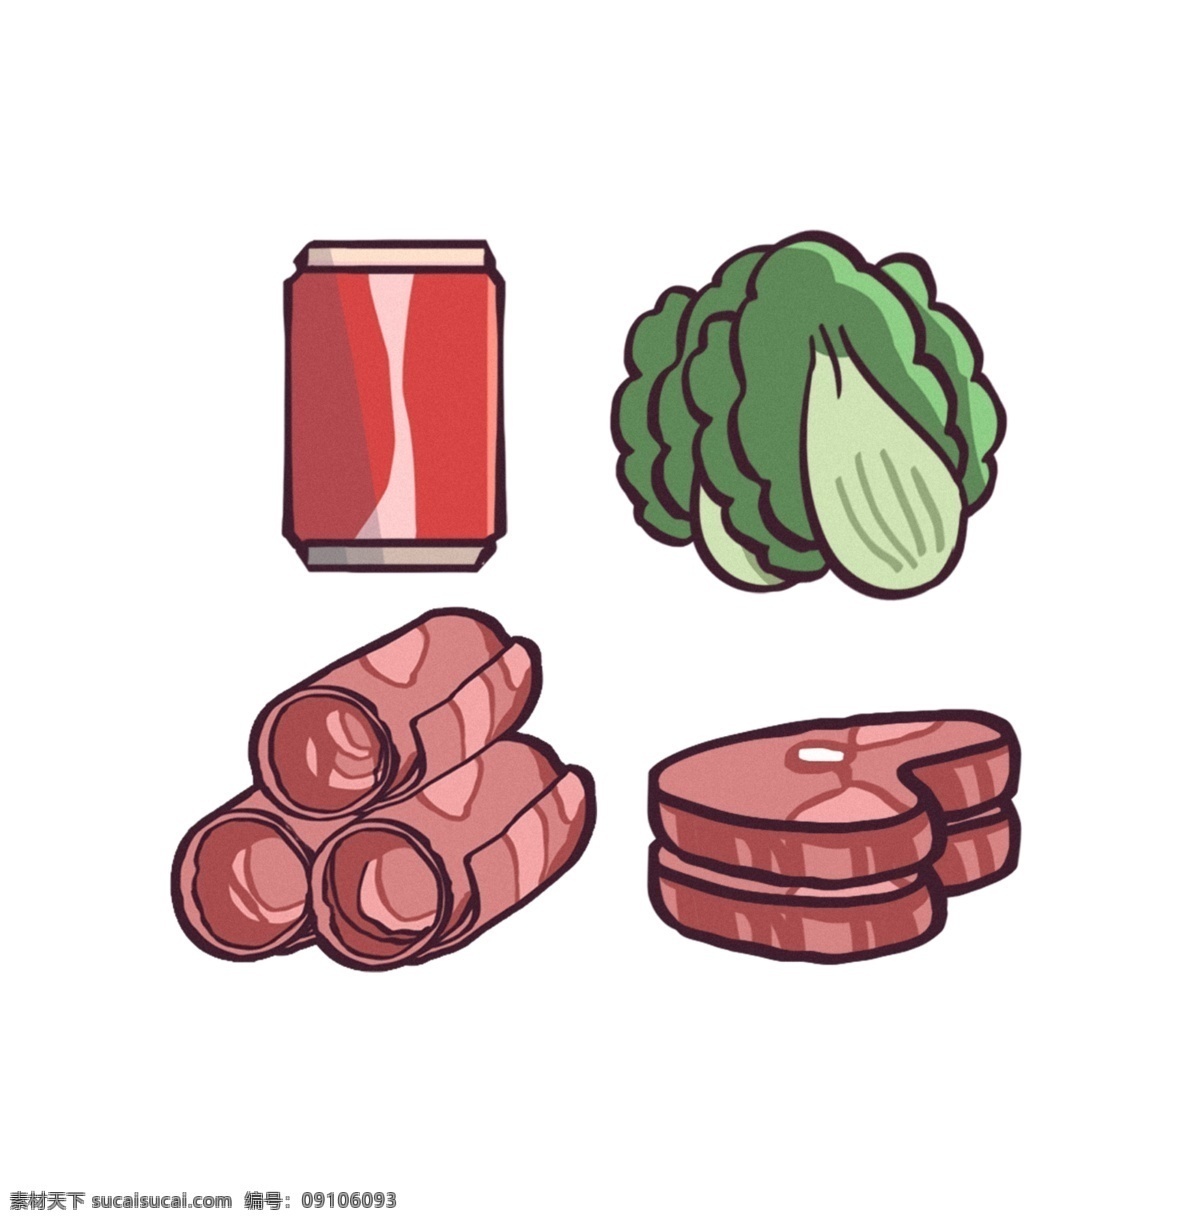 牛排 肉 卷 蔬菜 可乐 手绘 素材图片 食物 插画 手绘素材 肉卷 食物素材 psd素材 大餐 食材 分层